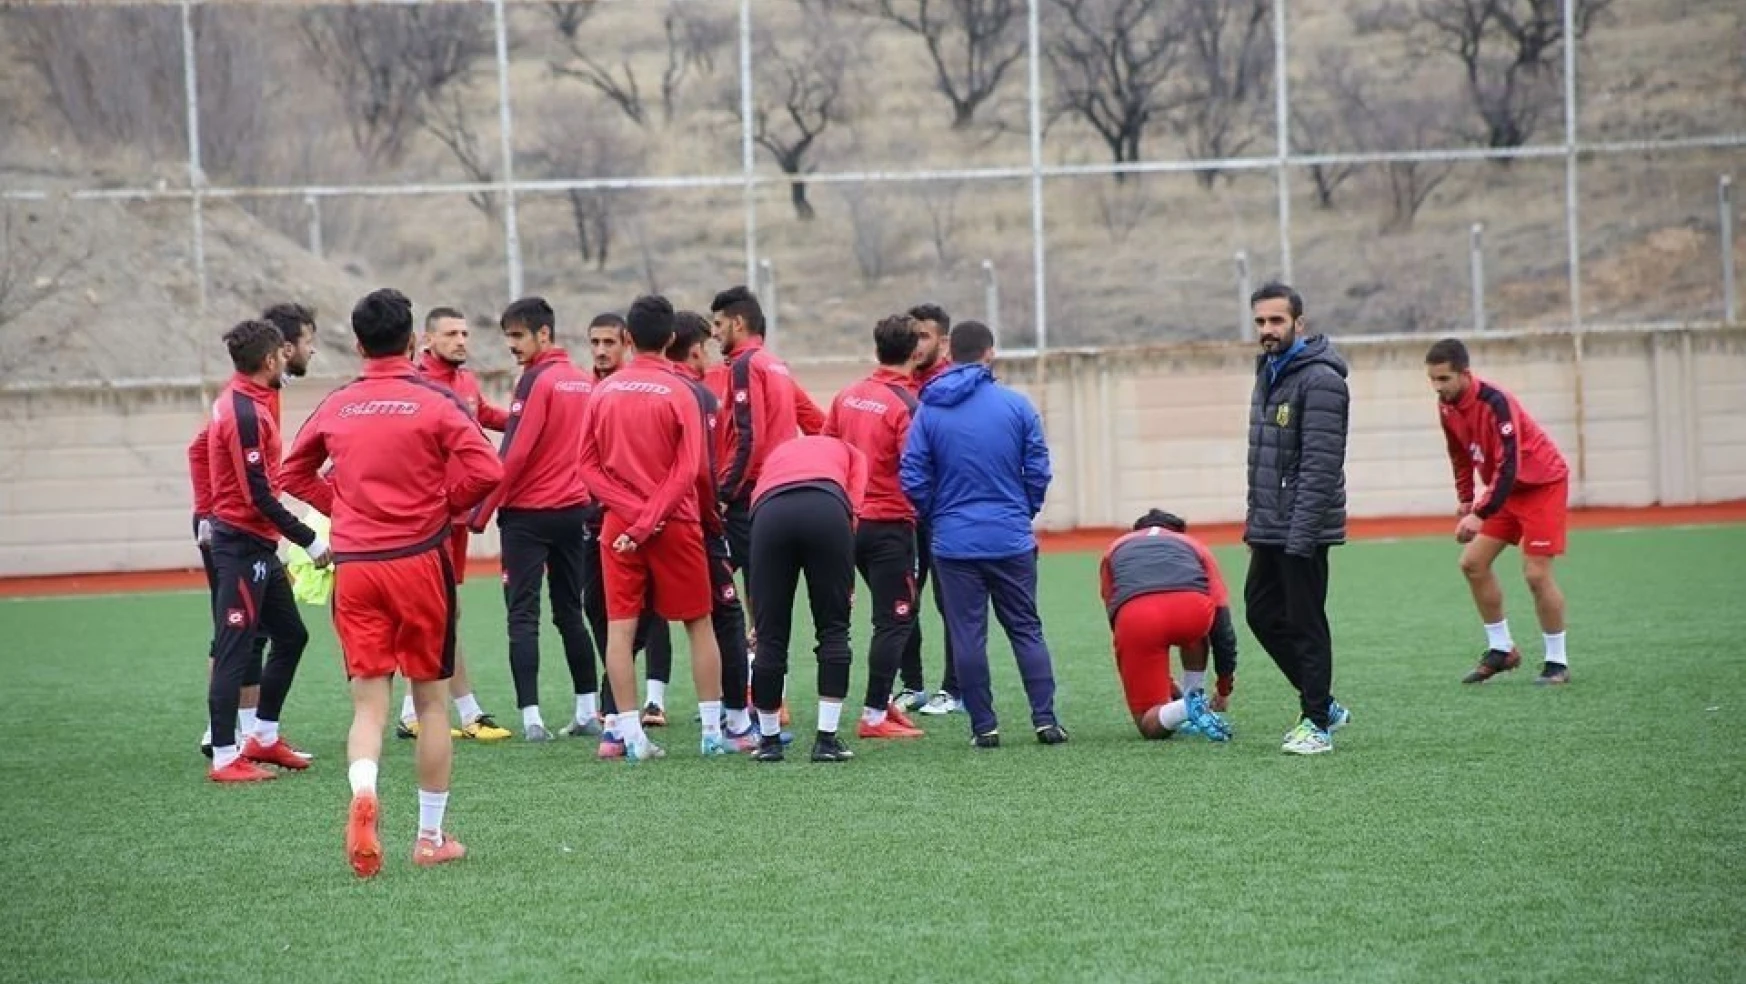 U21 Süper Ligi'nde Evkur Yeni Malatyaspor, Gençlerbirliğini ağırlayacak
